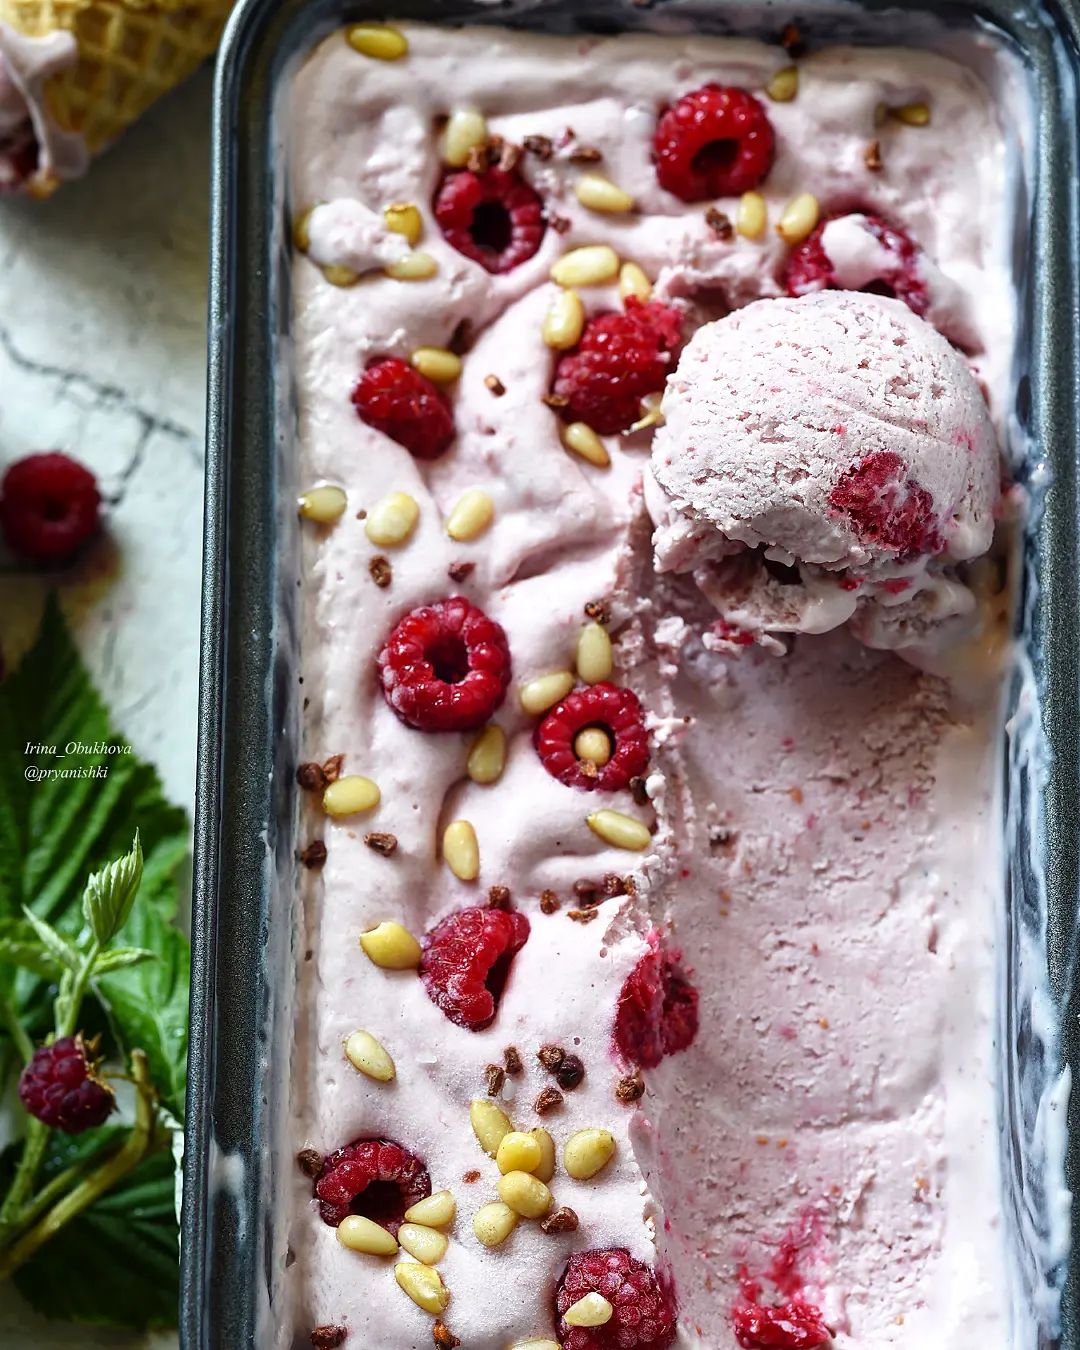 Raspberry ice cream